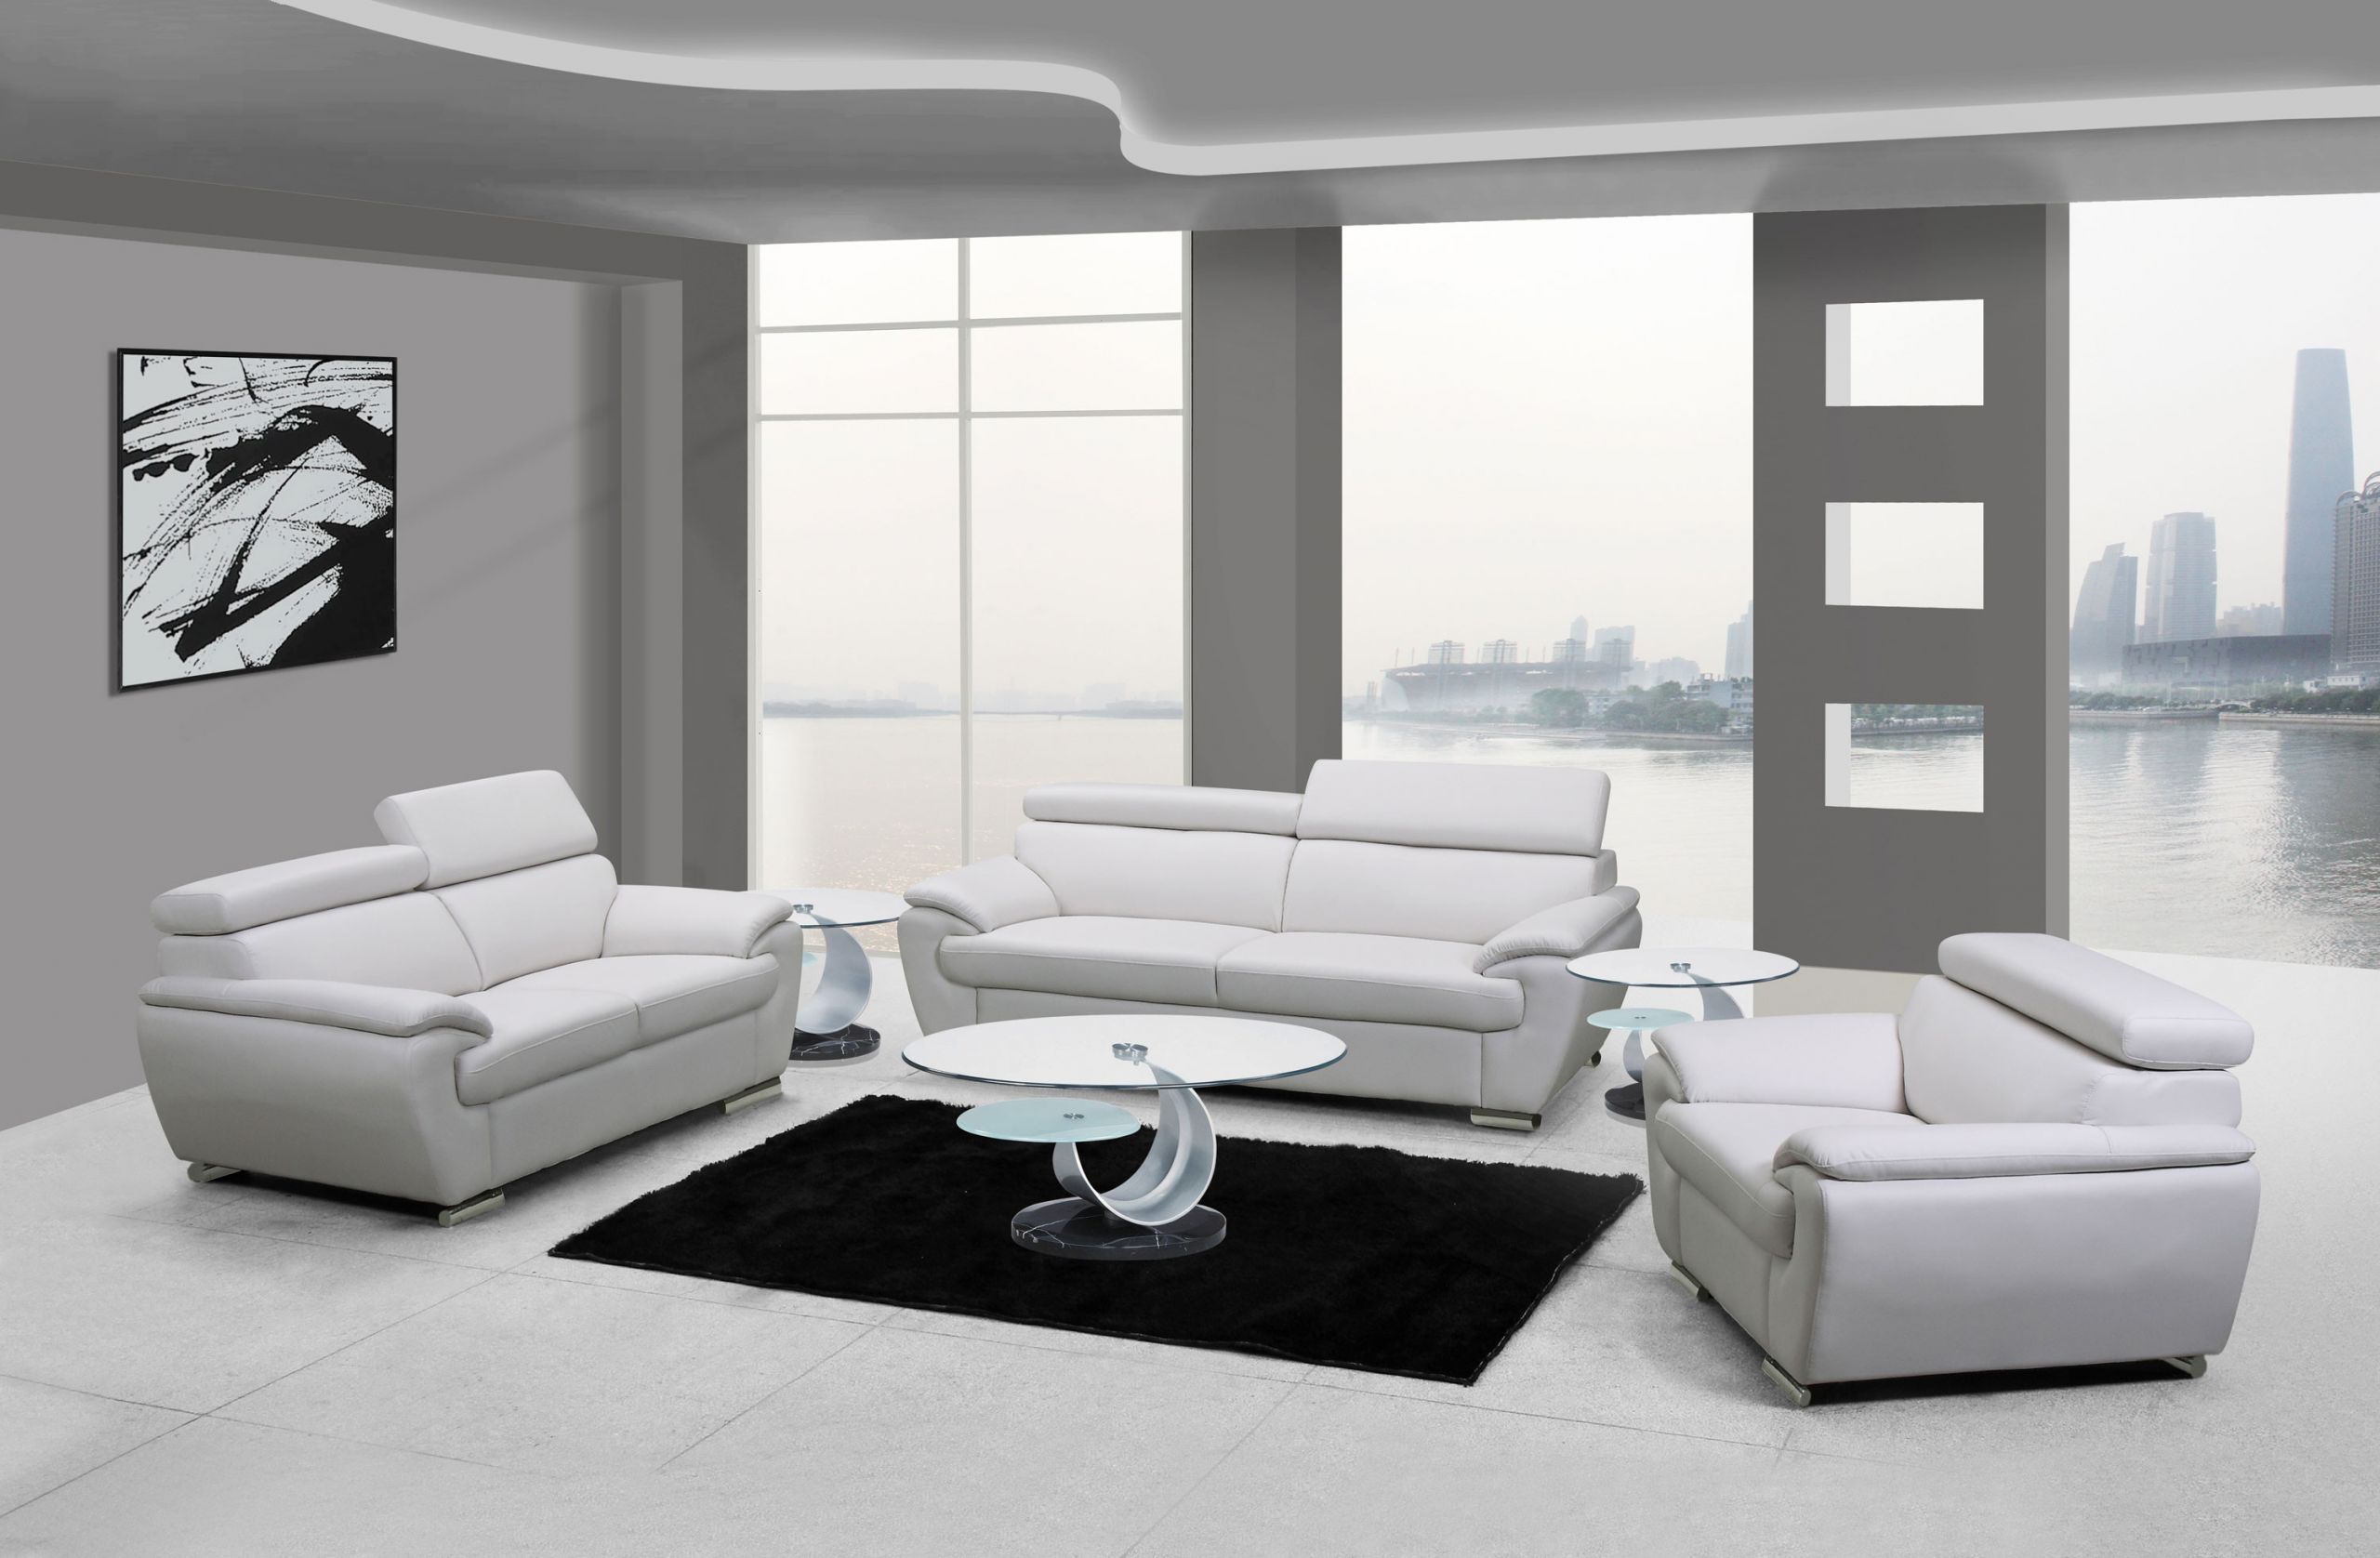 Modern White Living Room Furniture
 Naples White Leather Living Room